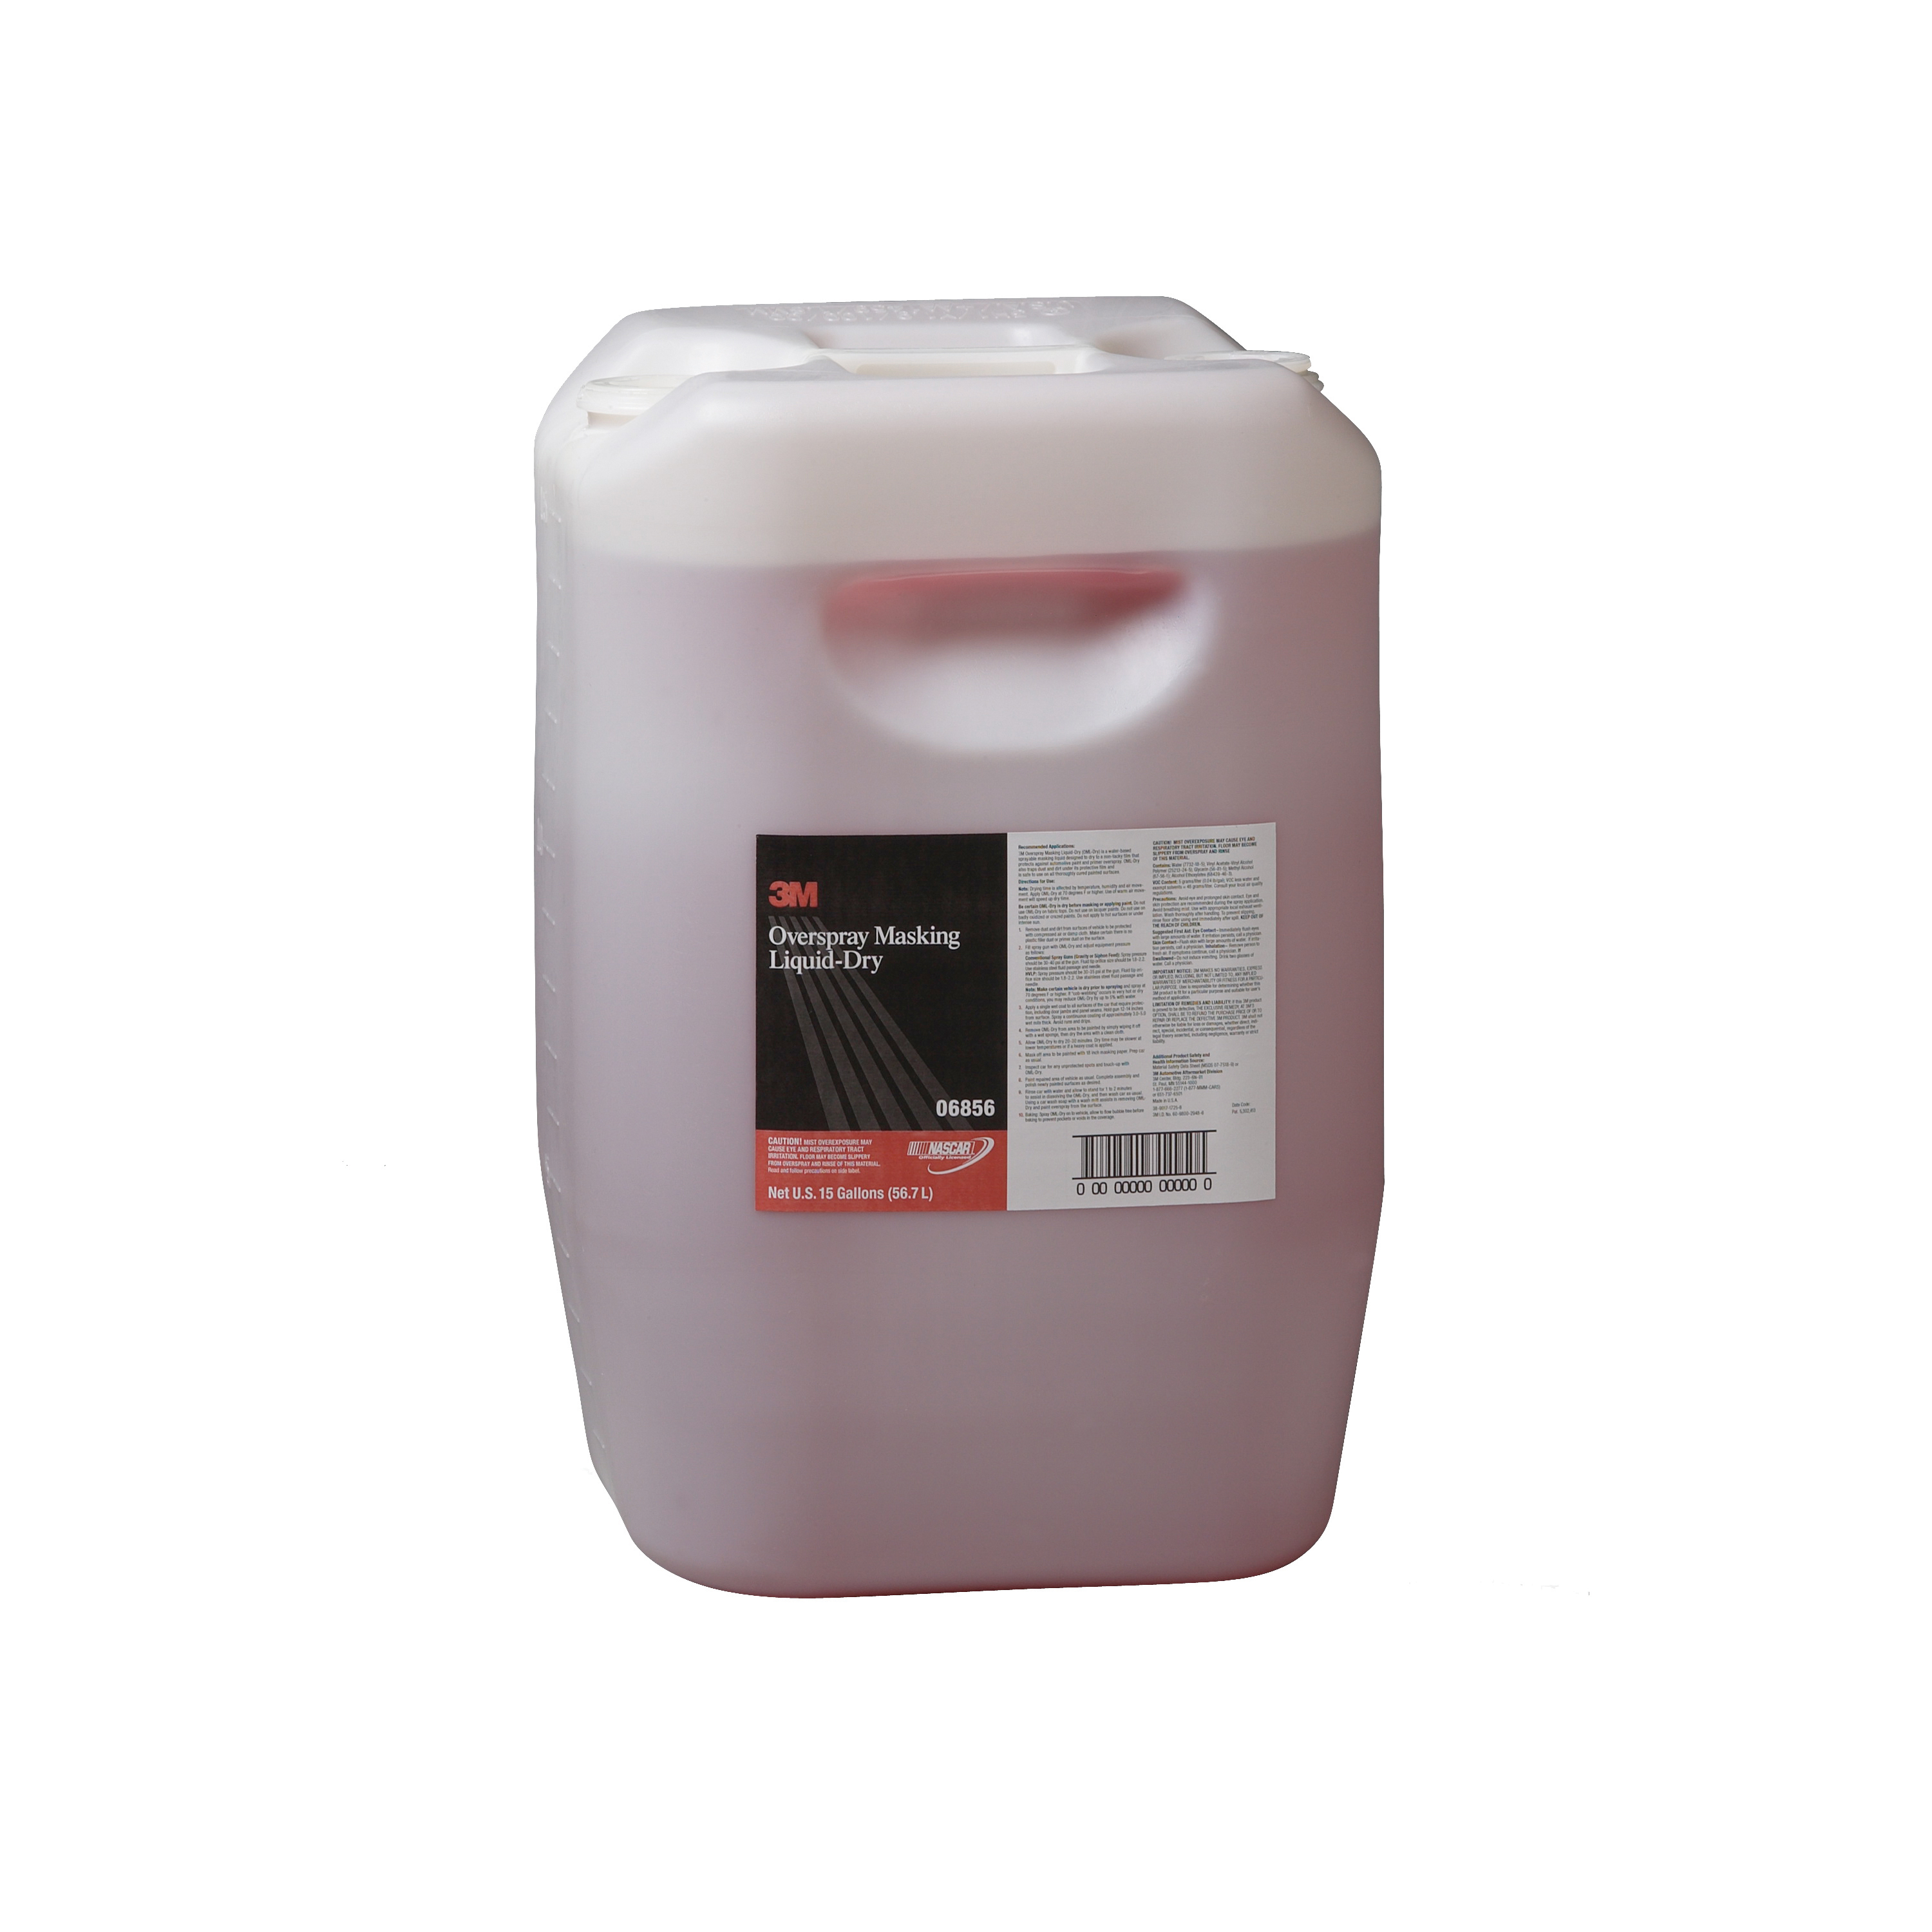 3M™ 051131-06856 Overspray Masking Liquid Dry, 15 gal Drum, Mild Odor/Scent, Red, Liquid Form